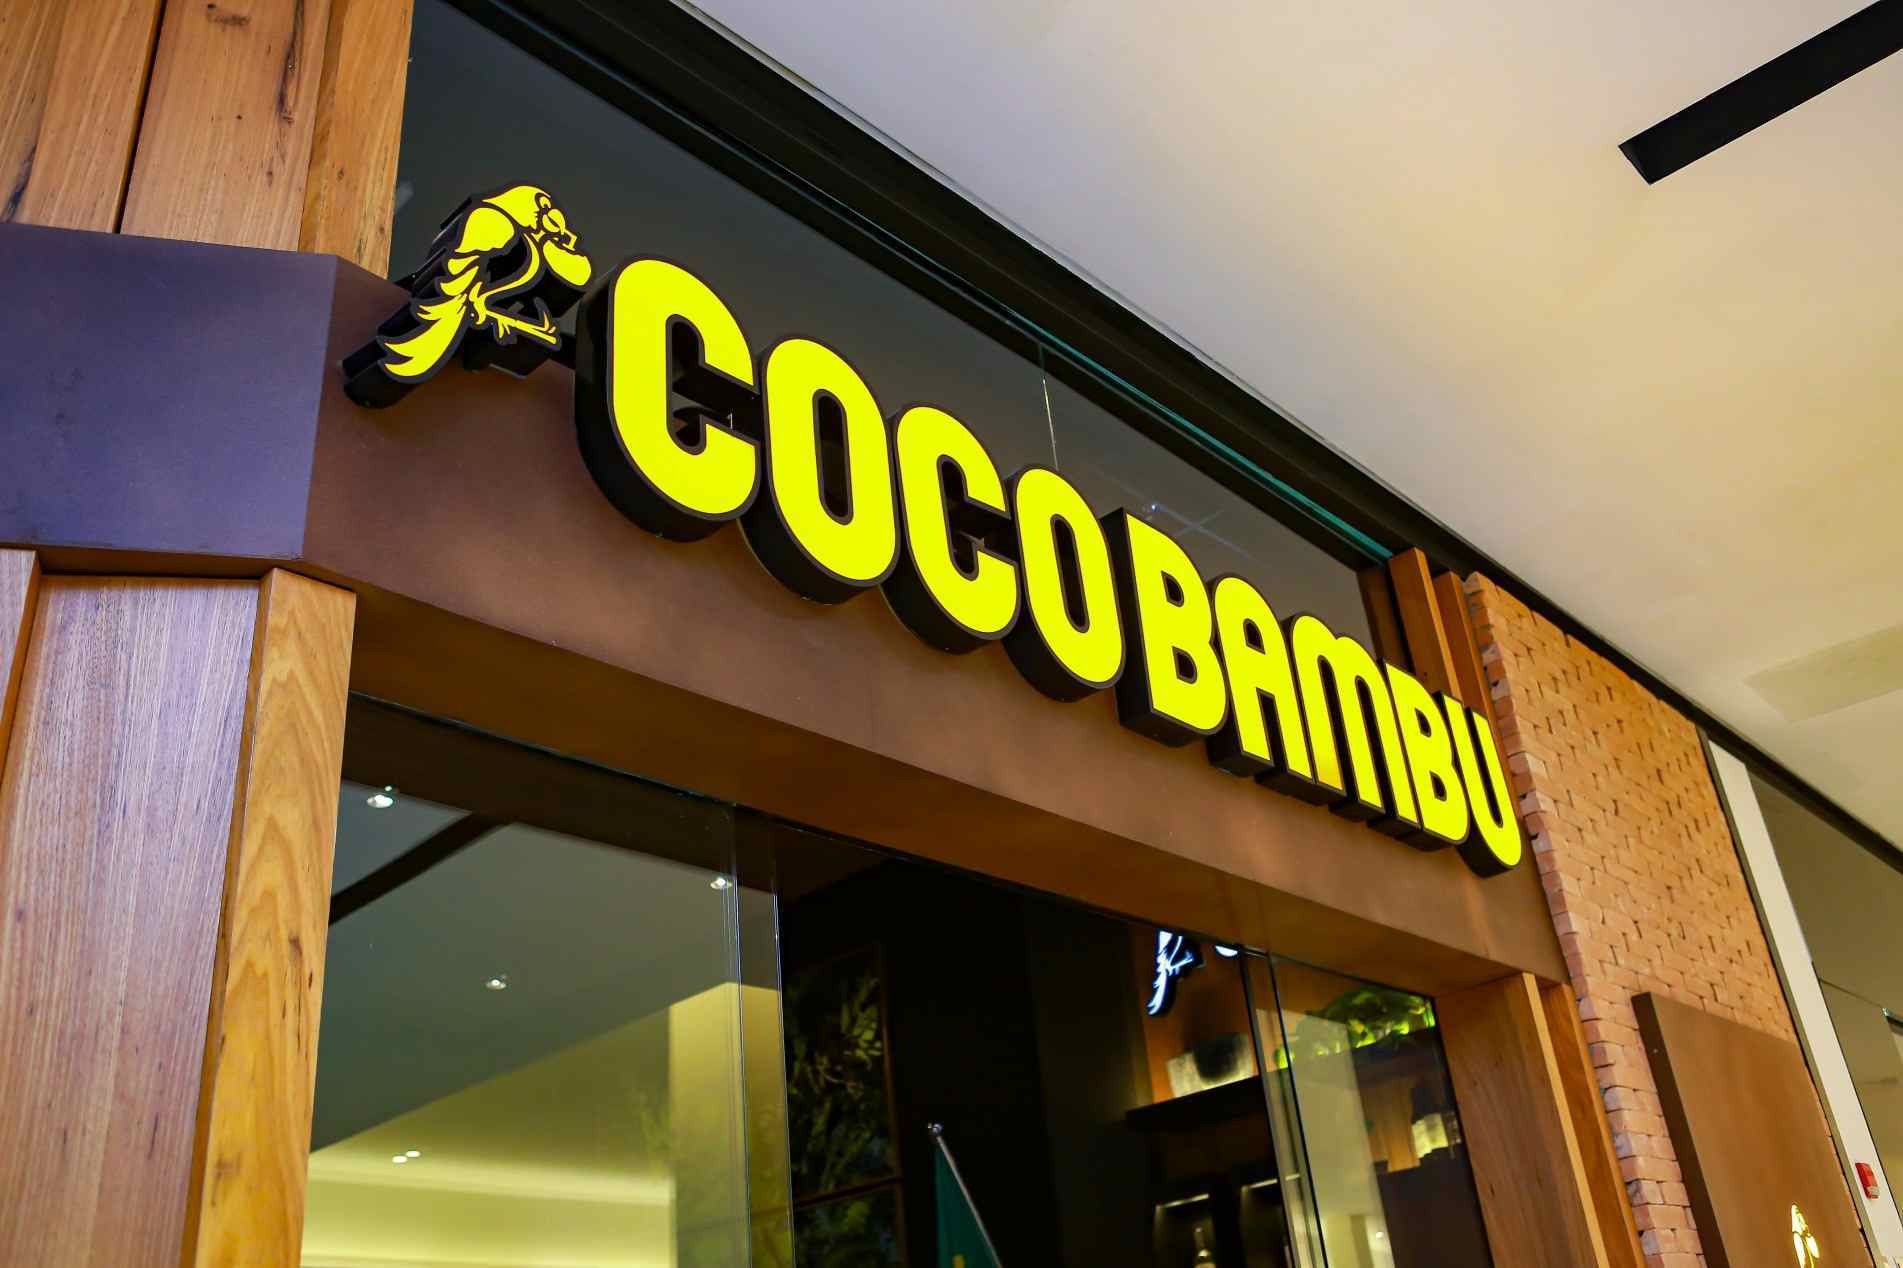 Coco Bambu Norte Shopping - Consulte disponibilidade e preços